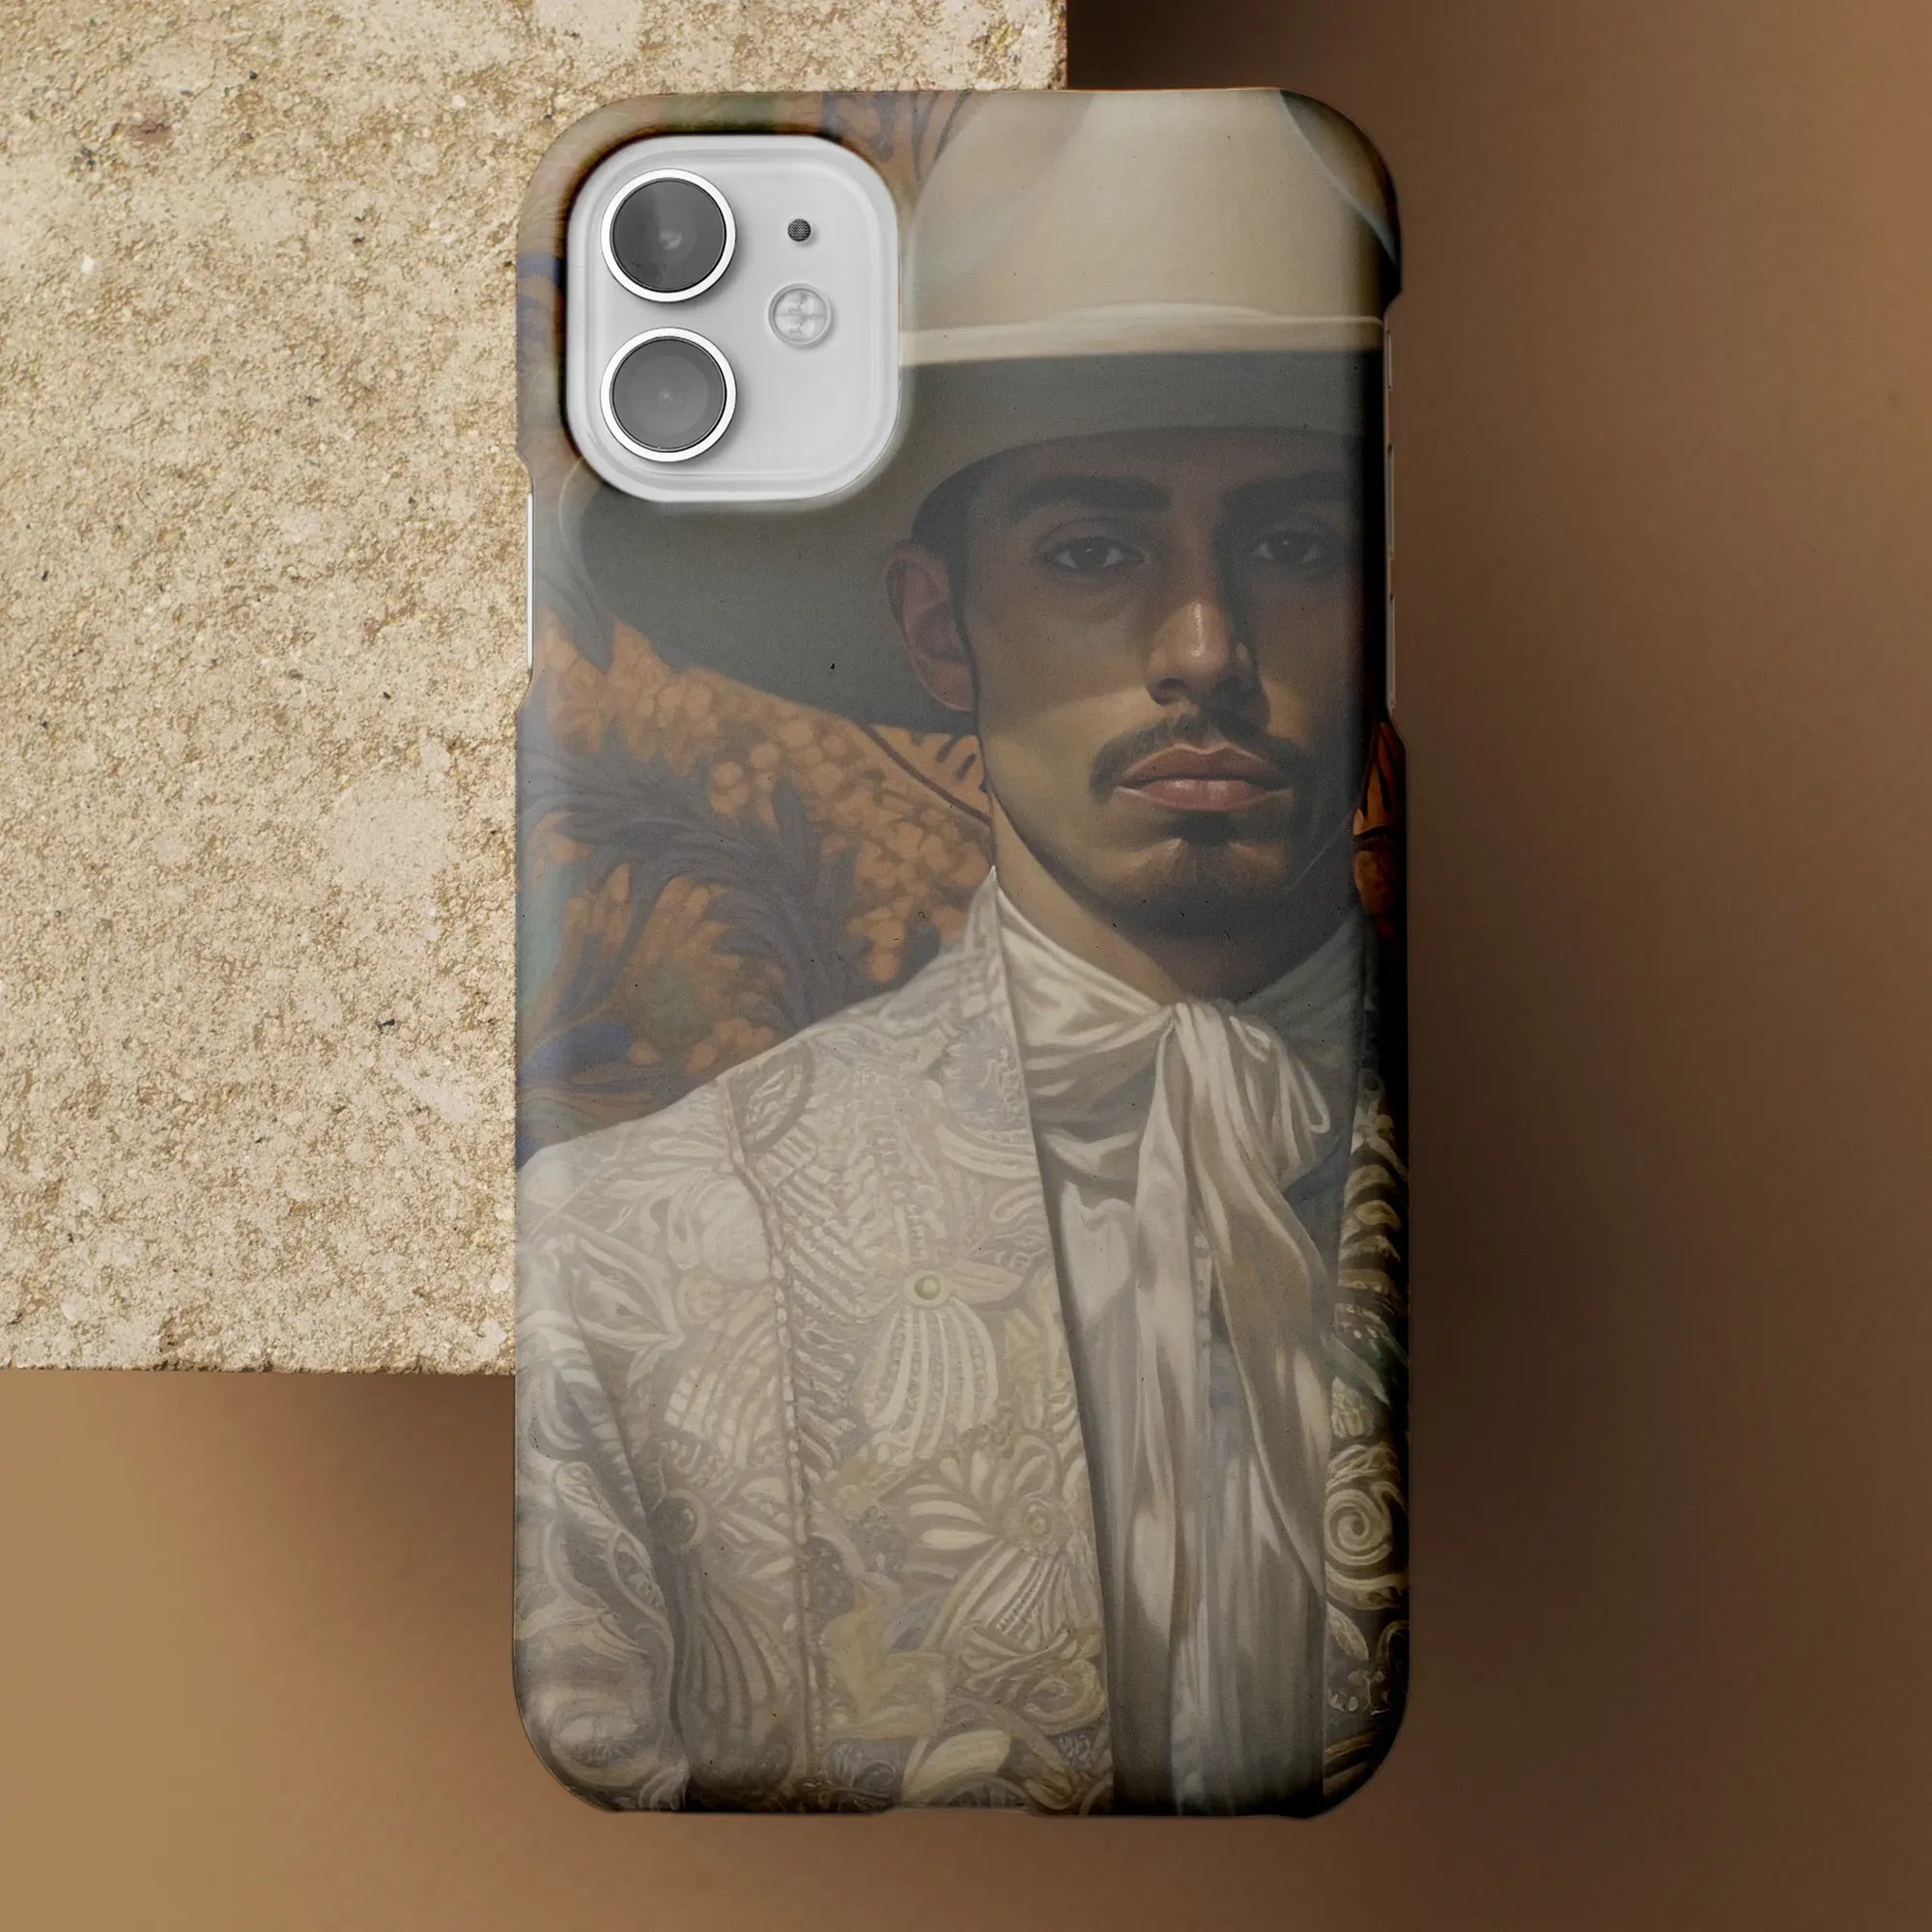 Estephan - Latino Gay Vaquero Aesthetic Art Phone Case - Mobile Phone Cases - Aesthetic Art